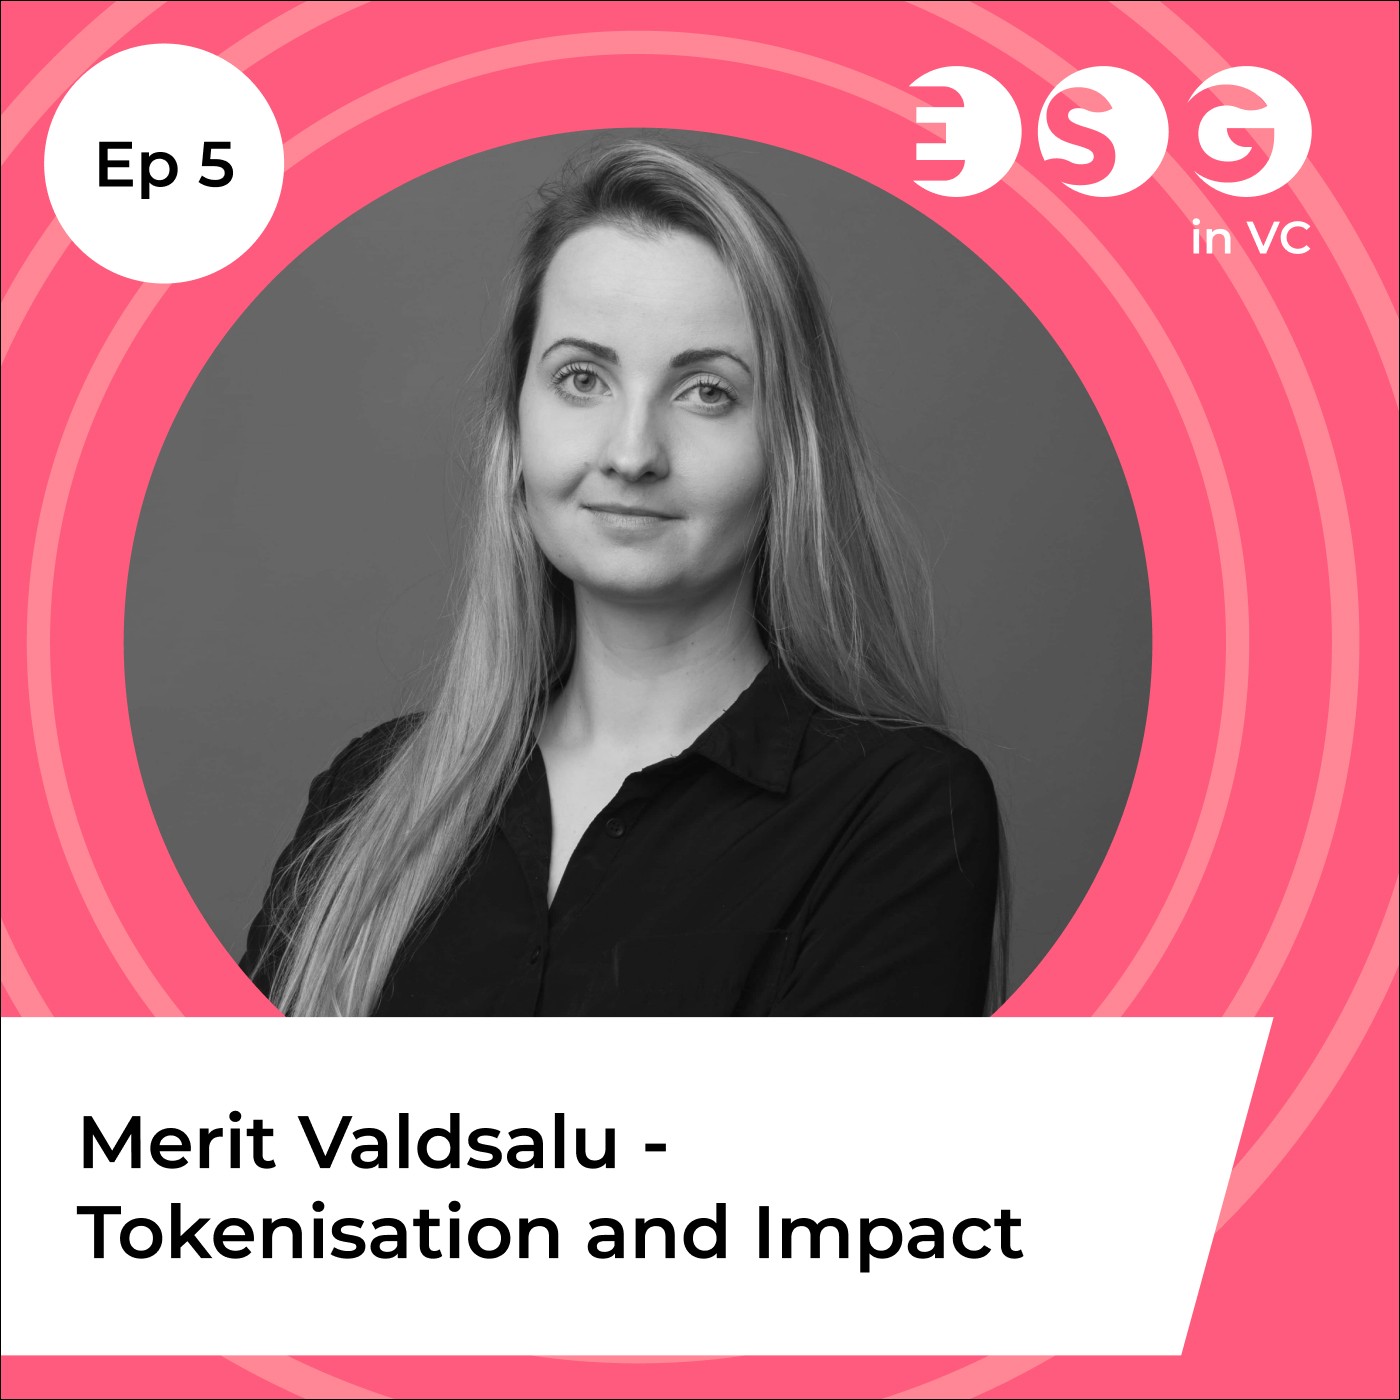 Ep 5 - Merit Valdsalu - Tokenization and Impact